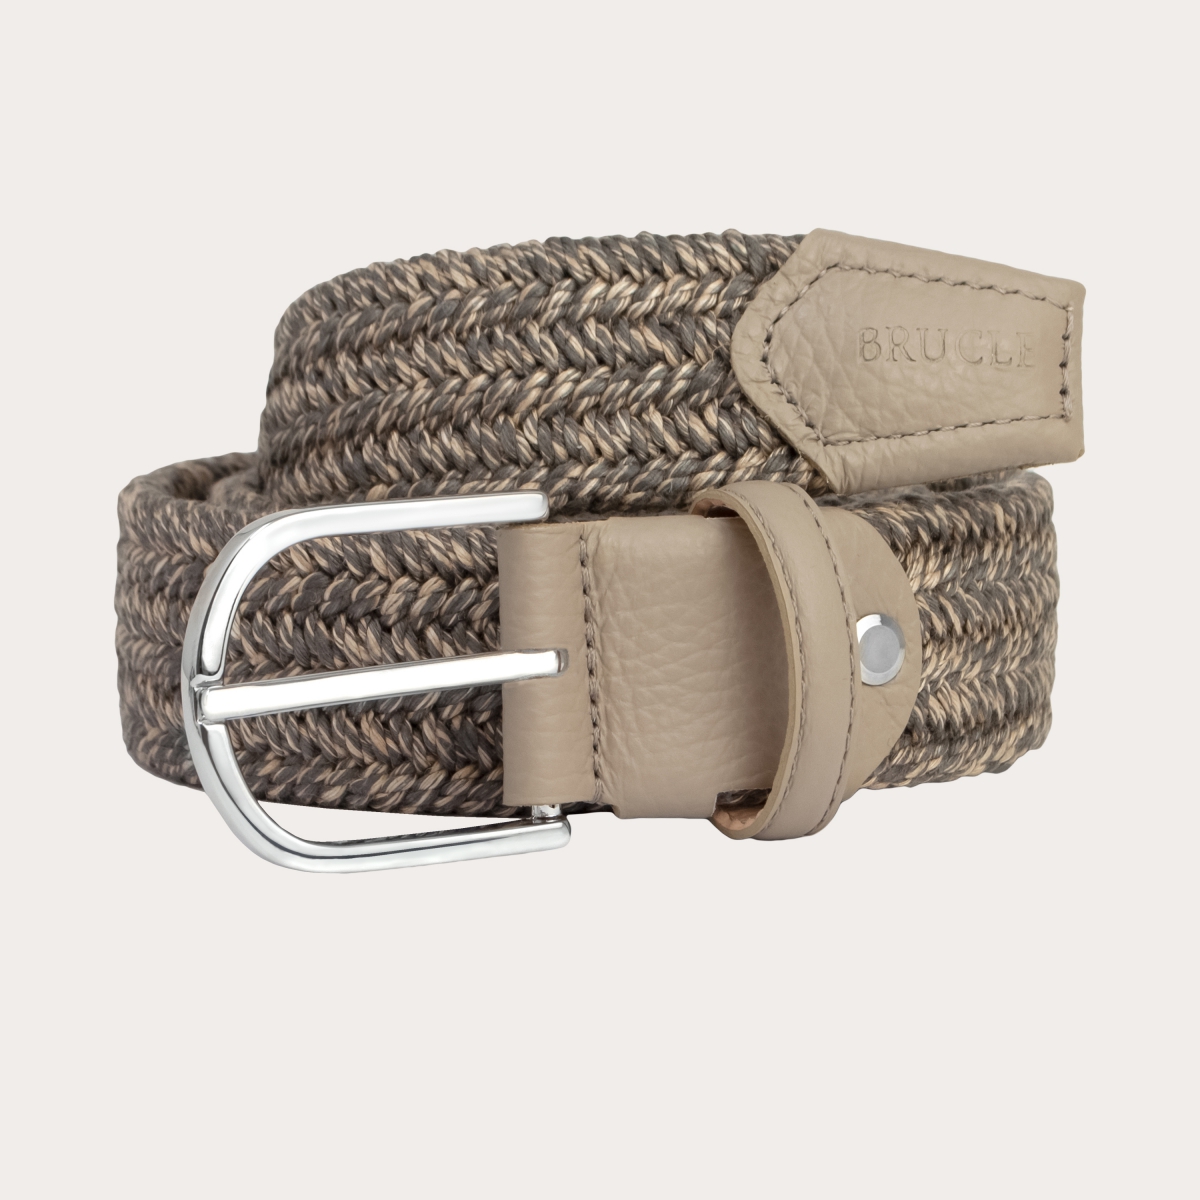 BRUCLE Cintura intrecciata elastica in lino naturale nickel free, beige tortora